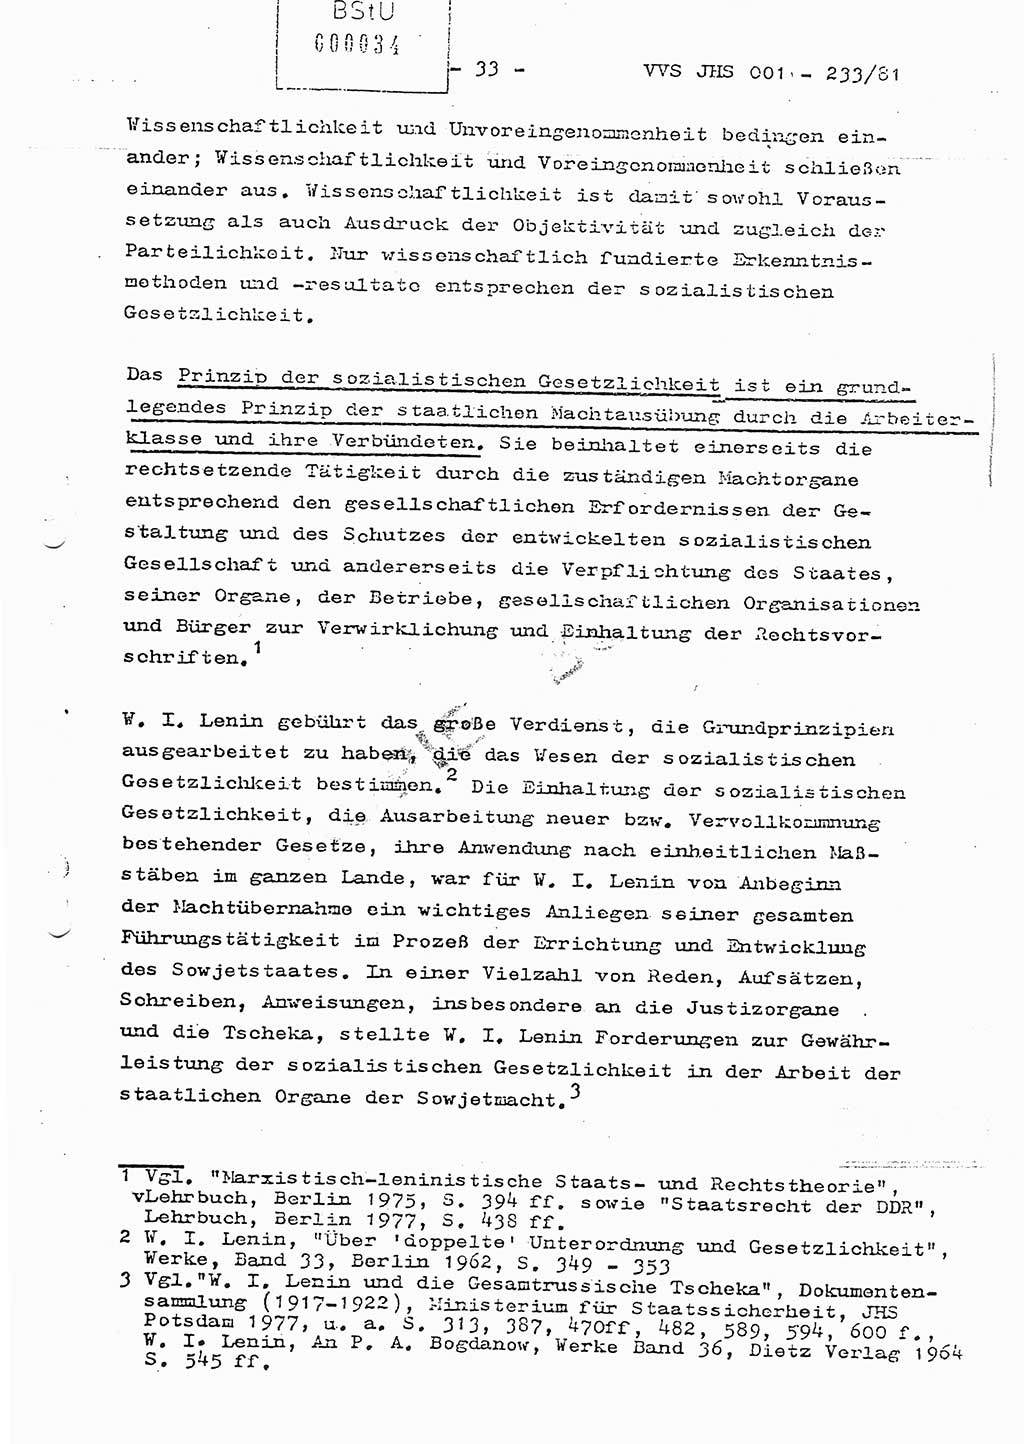 Dissertation Oberstleutnant Horst Zank (JHS), Oberstleutnant Dr. Karl-Heinz Knoblauch (JHS), Oberstleutnant Gustav-Adolf Kowalewski (HA Ⅸ), Oberstleutnant Wolfgang Plötner (HA Ⅸ), Ministerium für Staatssicherheit (MfS) [Deutsche Demokratische Republik (DDR)], Juristische Hochschule (JHS), Vertrauliche Verschlußsache (VVS) o001-233/81, Potsdam 1981, Blatt 34 (Diss. MfS DDR JHS VVS o001-233/81 1981, Bl. 34)